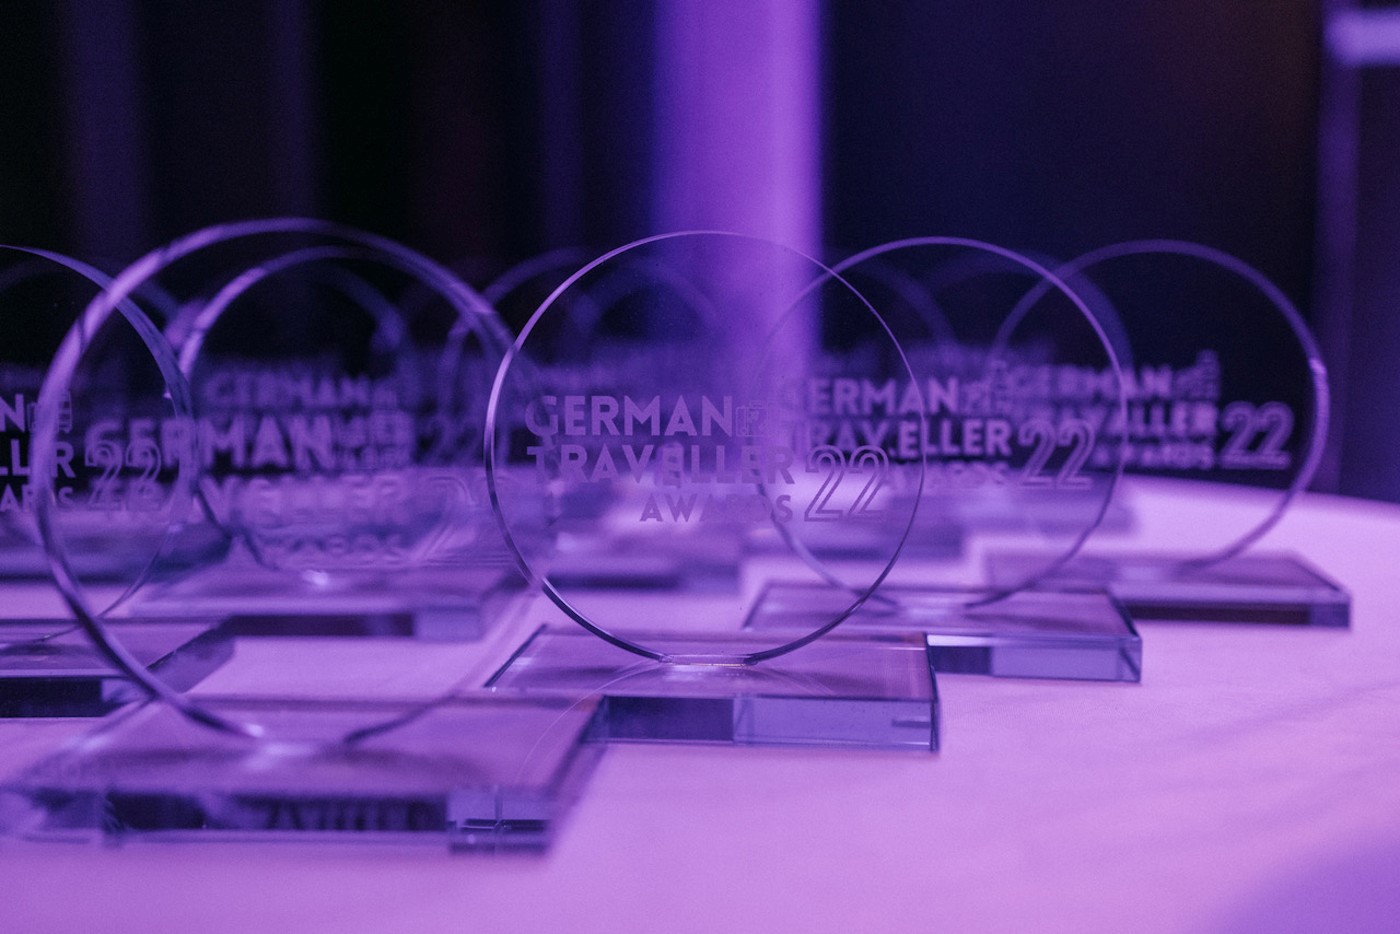 Die German Traveller Awards werden auch in diesem Jahr von bekannten Marken unterstützt